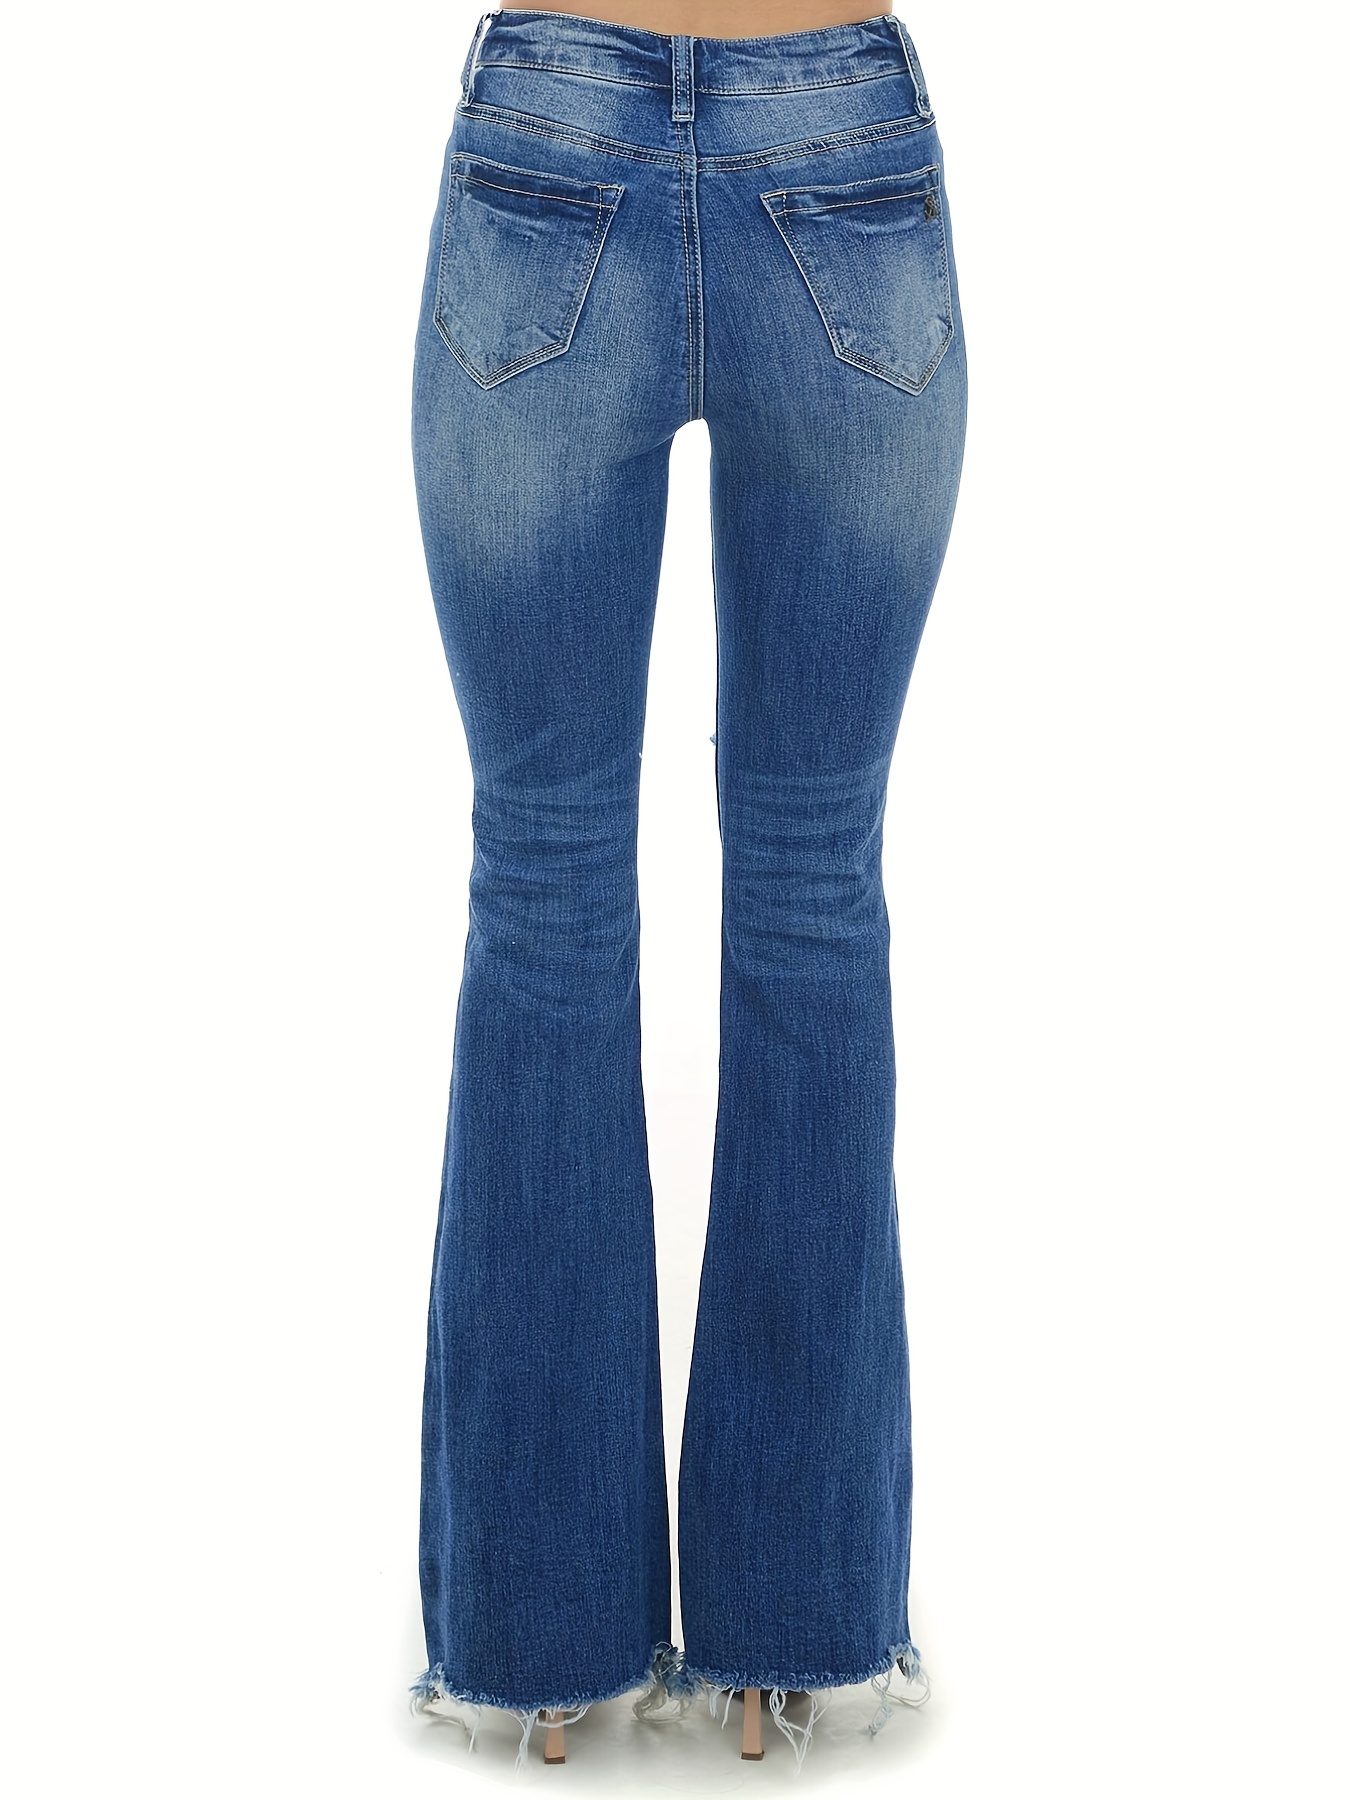 Jeans Acampanados Con Dobladillo Sin Rematar Azul, Pantalones De Mezclilla  De Pierna Ancha Con Cintura Alta Rasgada En La Parte Inferior De Campana, P